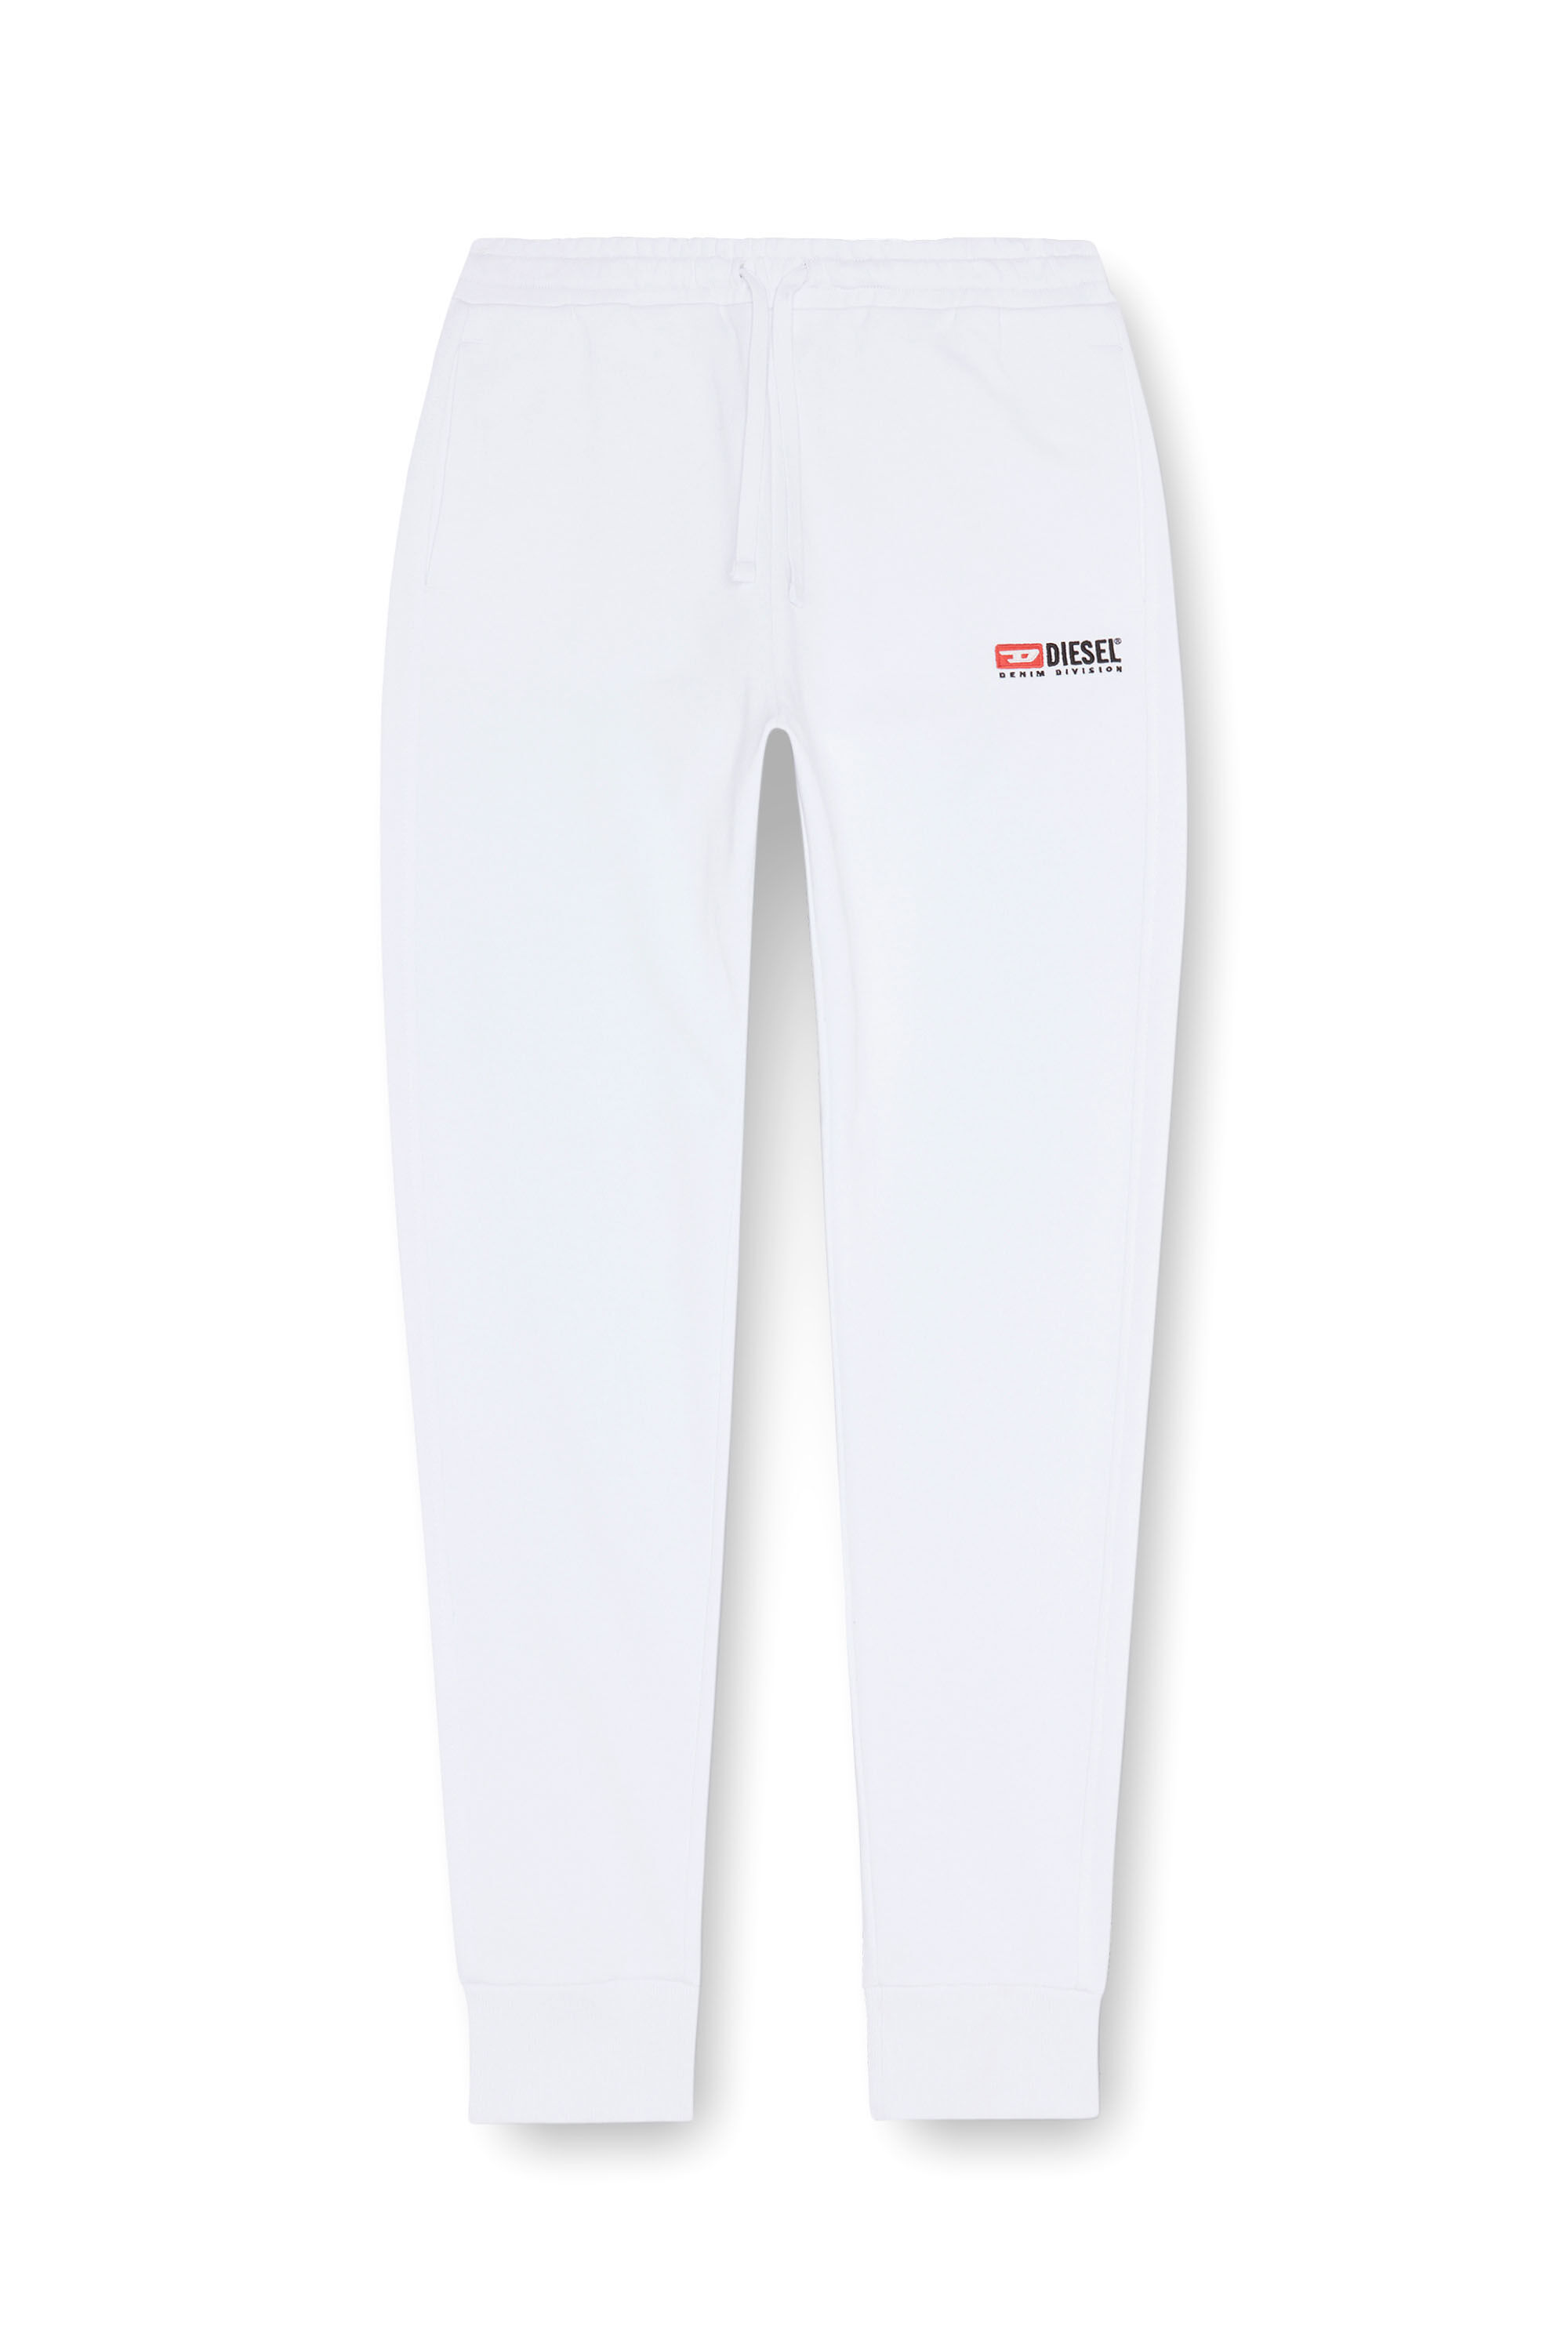 Diesel - P-TARY-DIV, Homme Pantalon de survêtement avec logo brodé in Blanc - Image 2